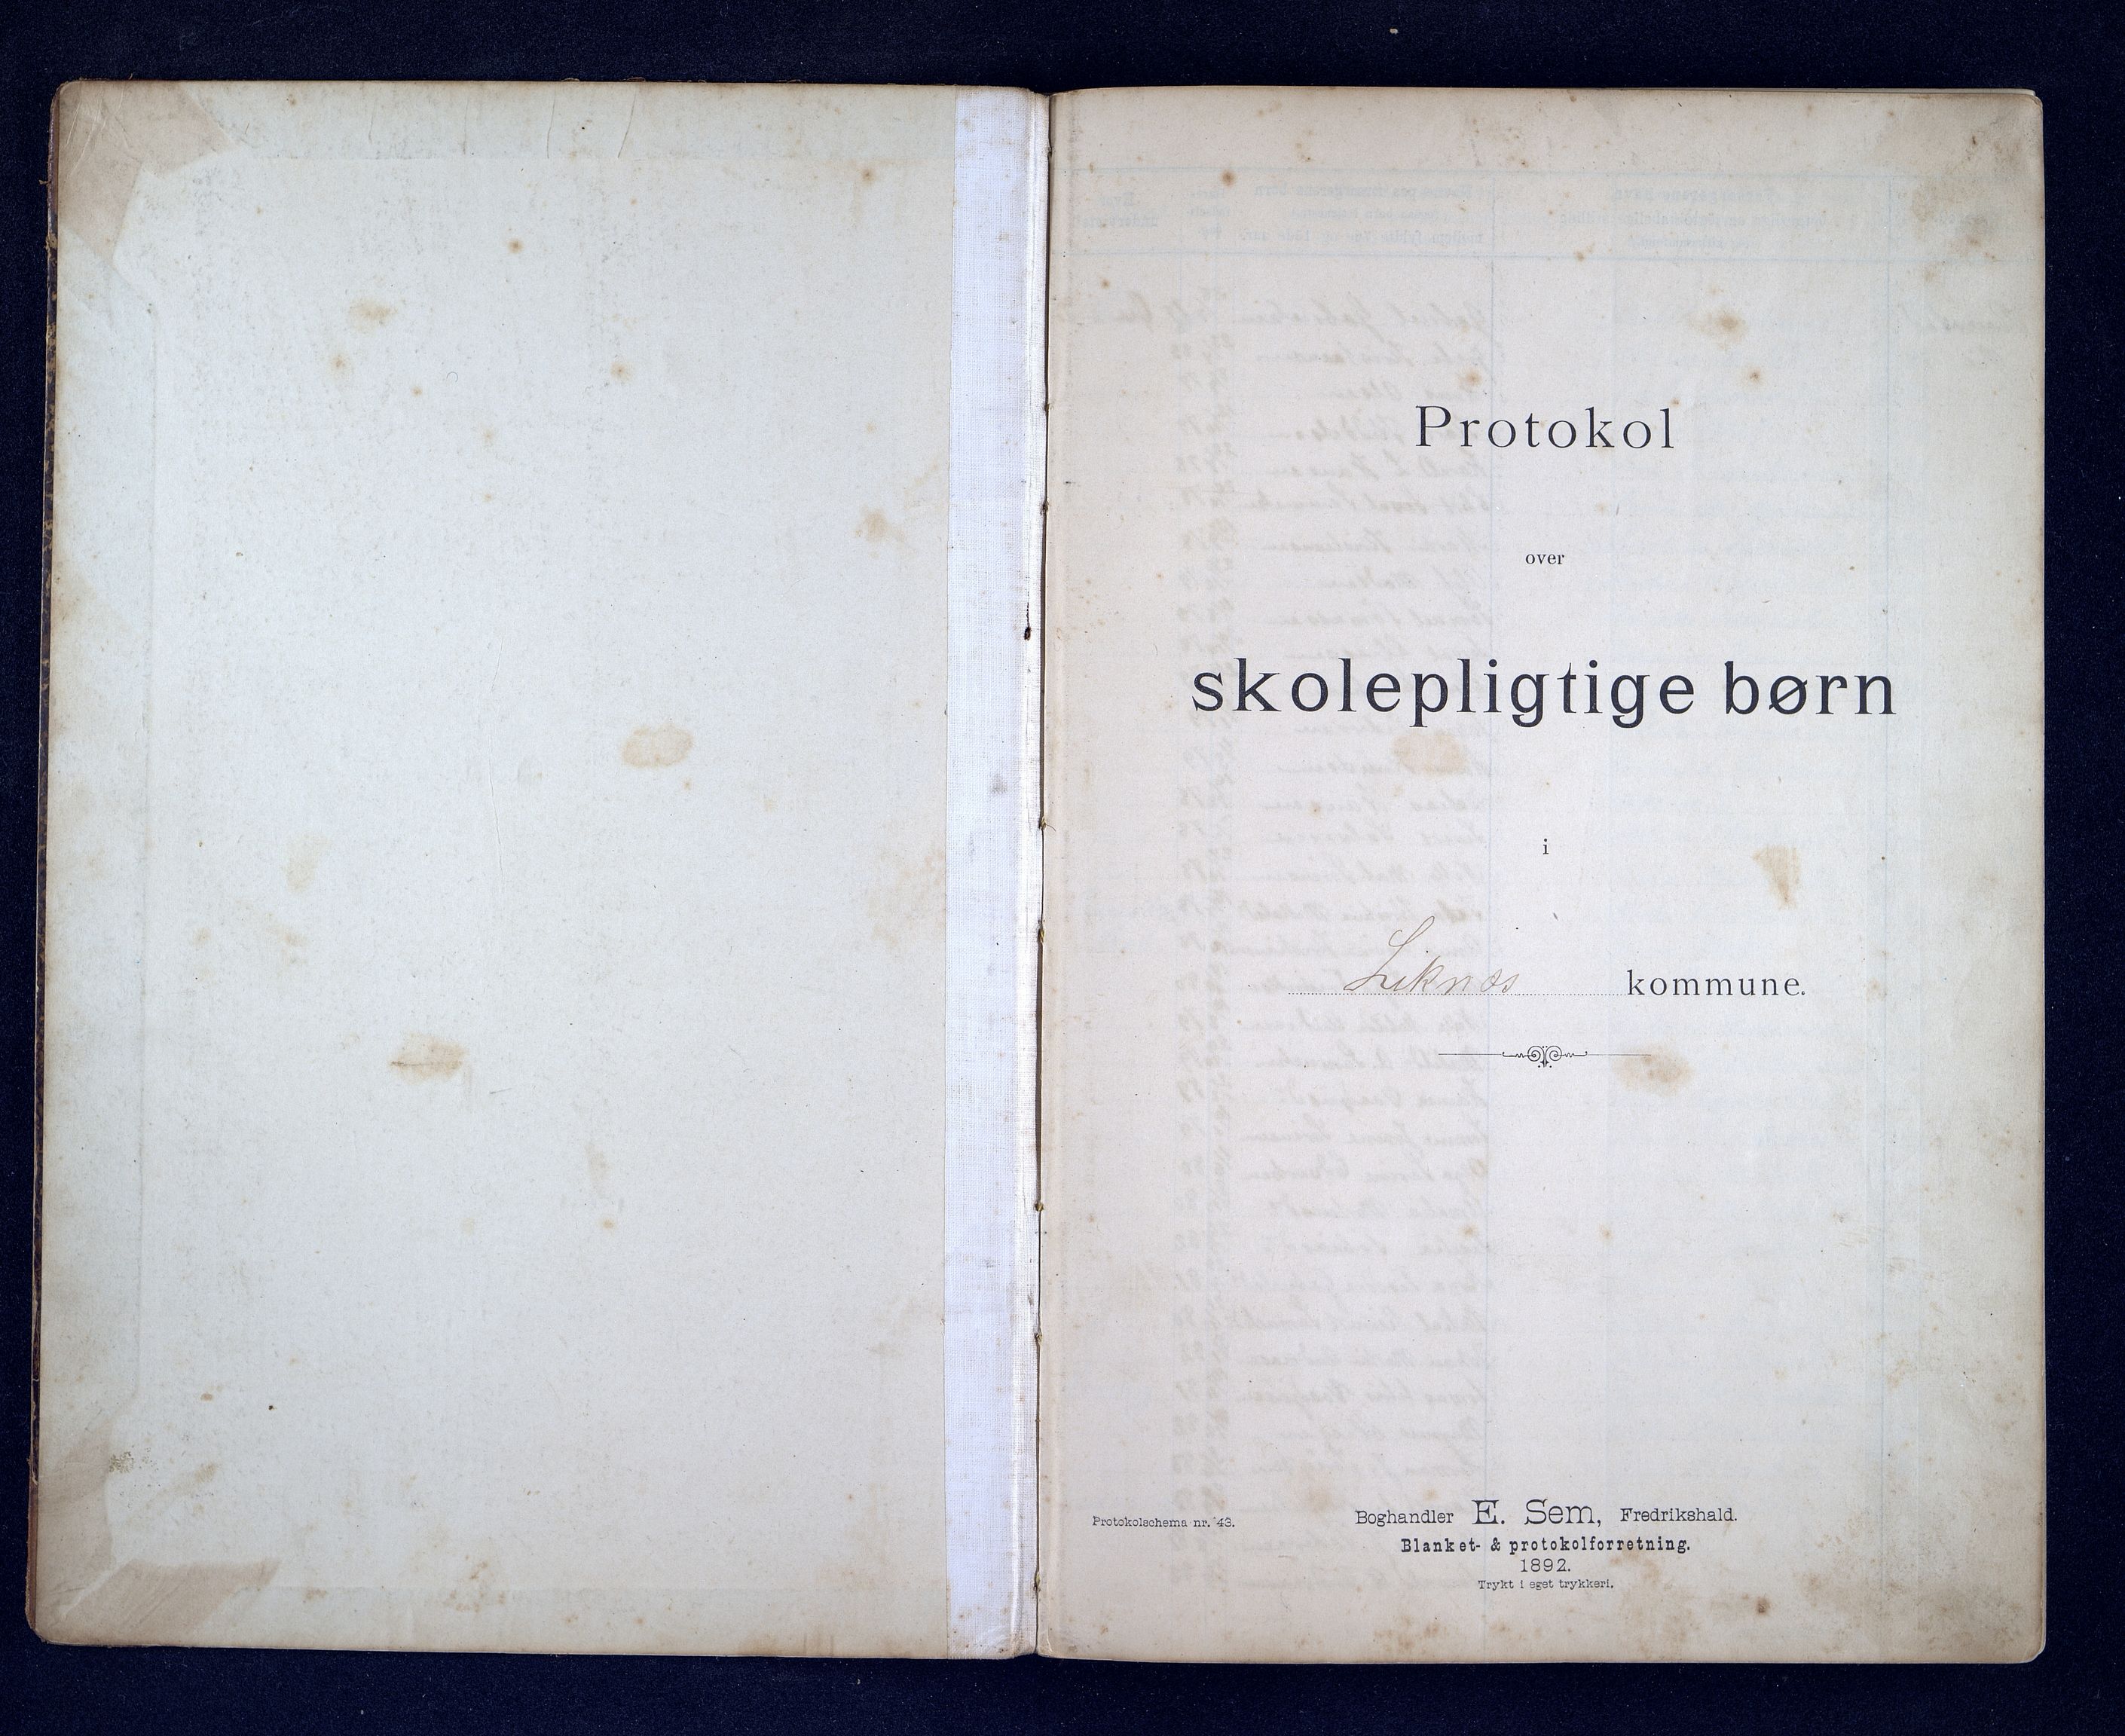 Kvinesdal kommune - Skolekommisjonen/Skolestyret, IKAV/1037KG510/C/L0005: Skolepliktige barn (d), 1878-1899